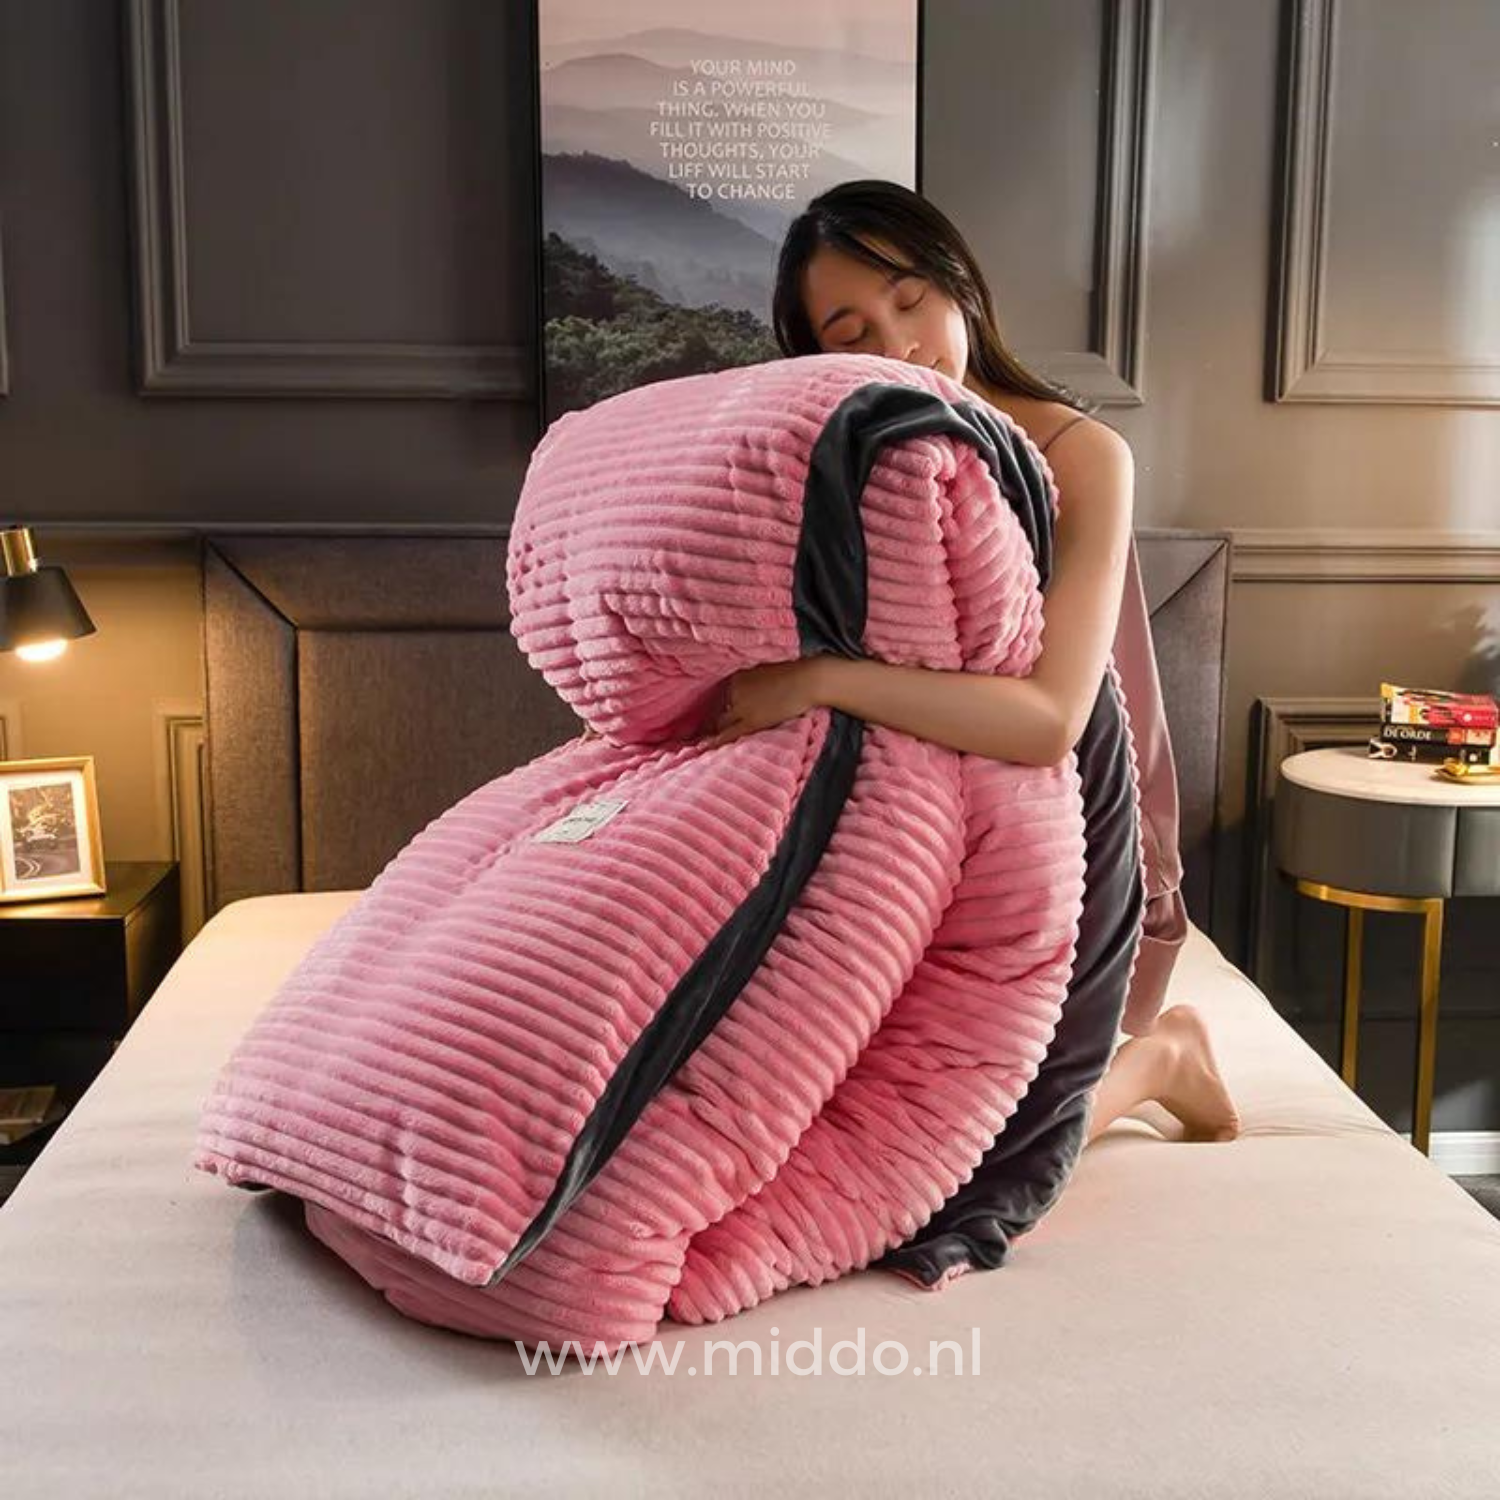 Vrouw met opgevouwen roze dekbedovertrek met dekbed erin op een bed